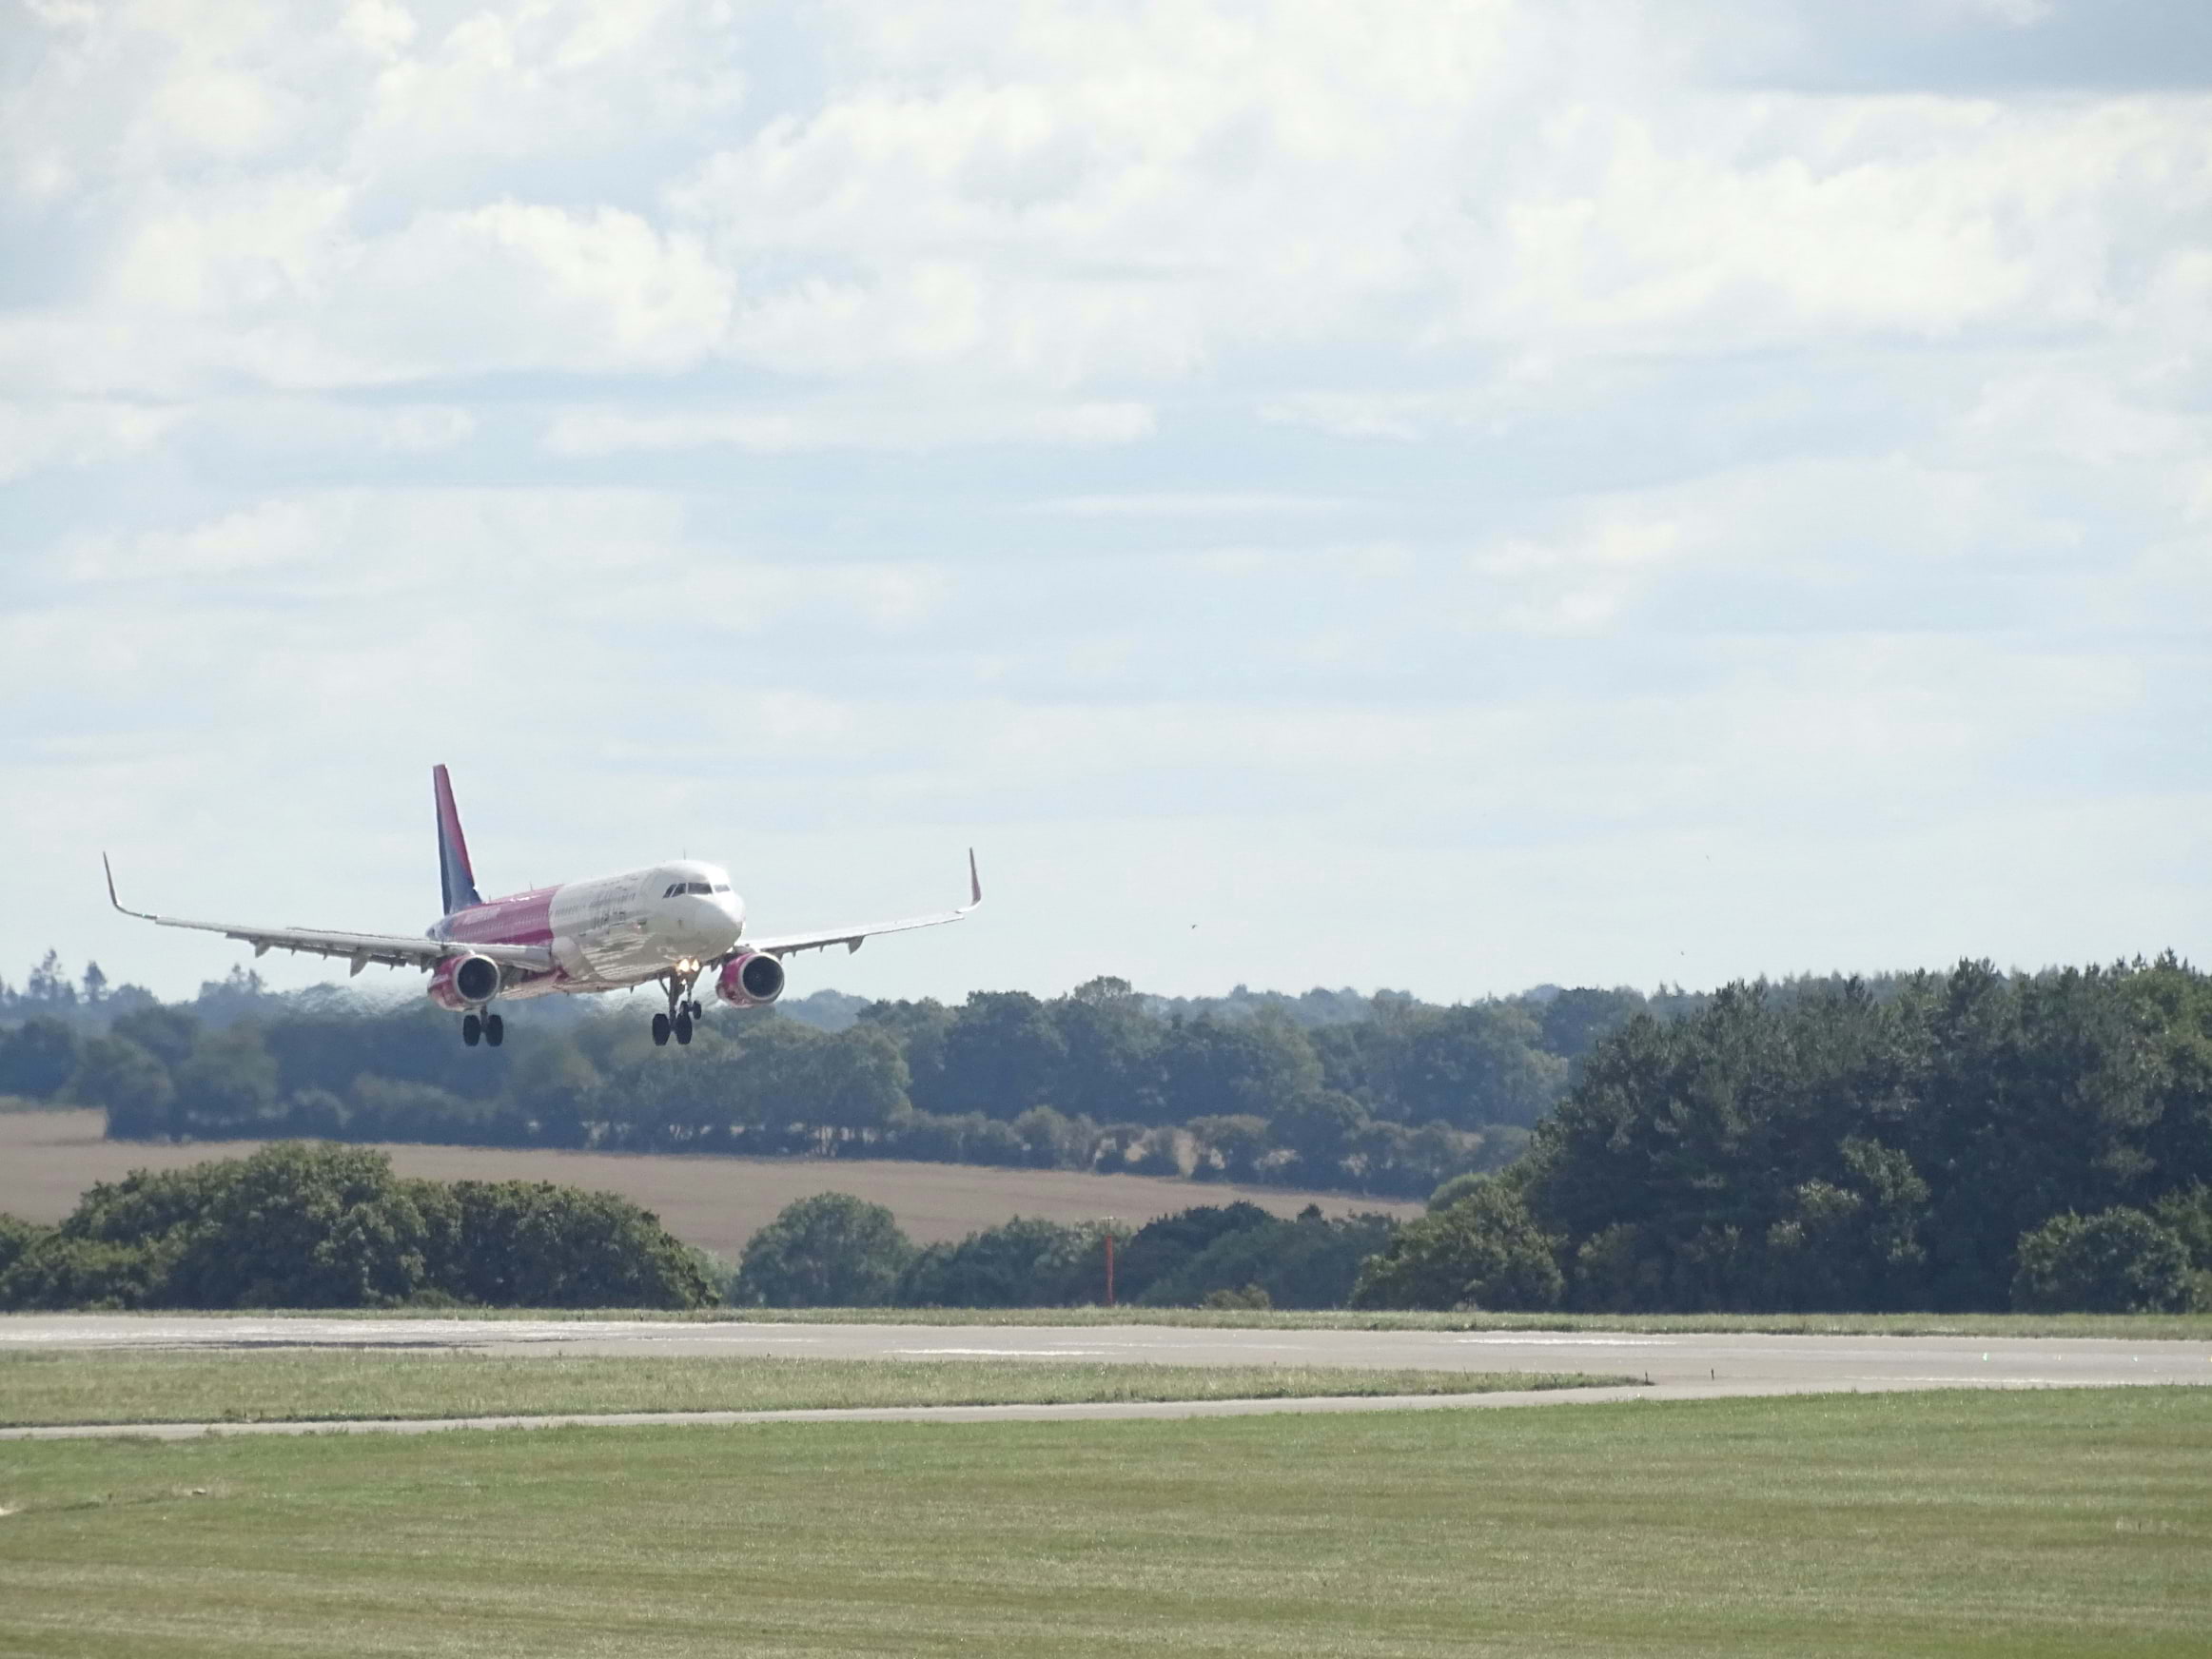 An aeroplane landing at Luton Airport